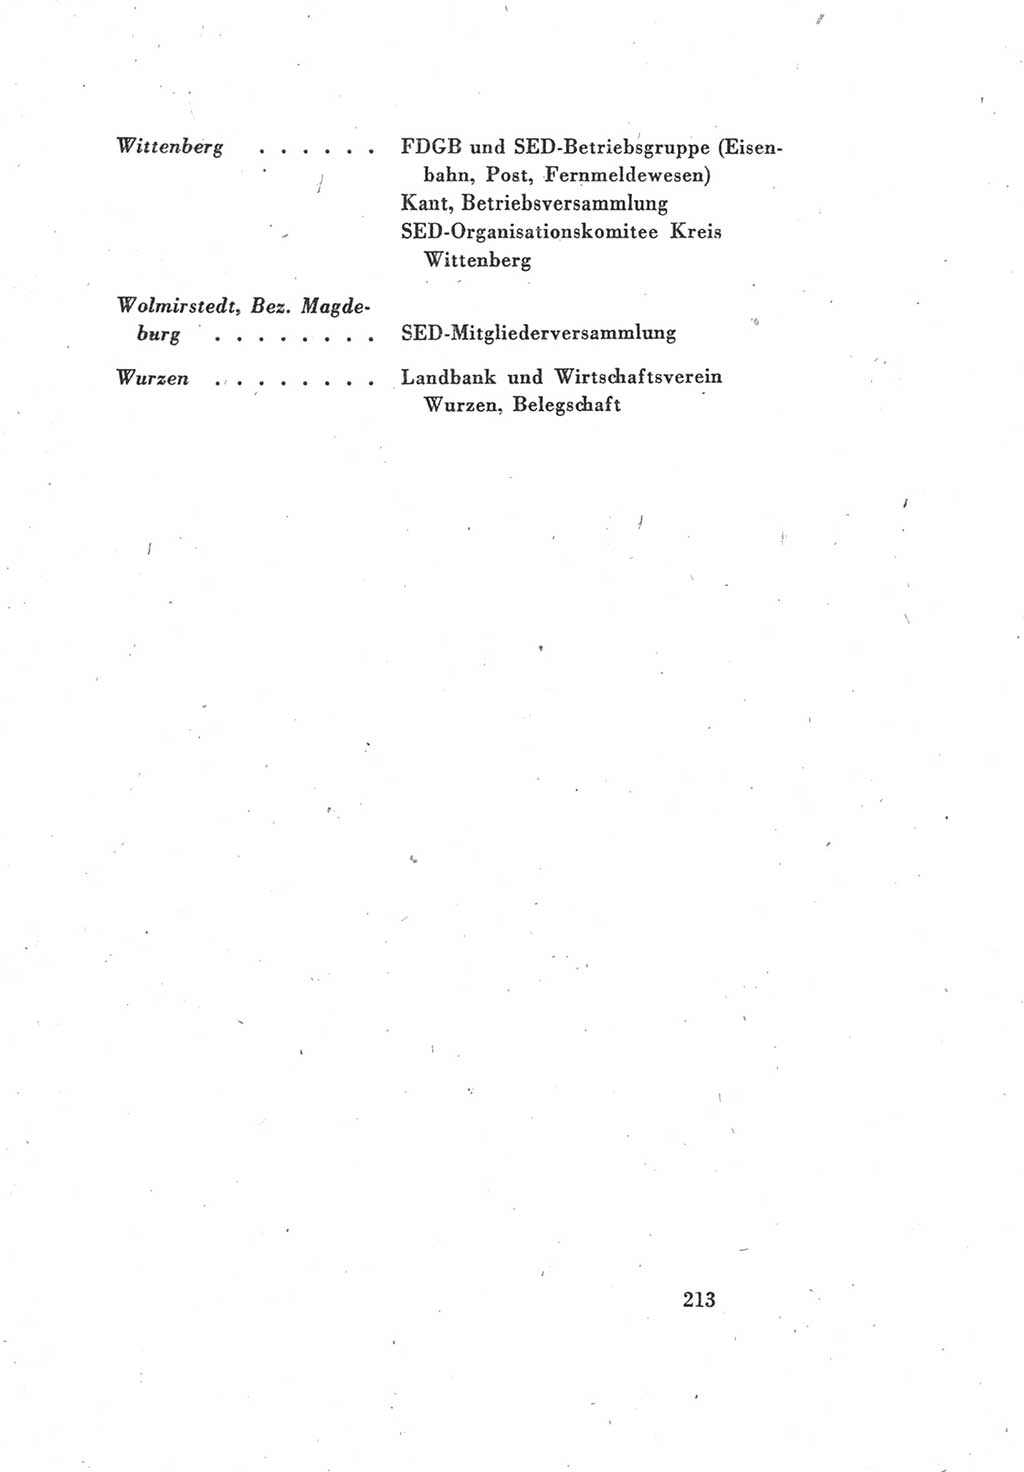 Protokoll des Vereinigungsparteitages der Sozialdemokratischen Partei Deutschlands (SPD) und der Kommunistischen Partei Deutschlands (KPD) [Sowjetische Besatzungszone (SBZ) Deutschlands] 1946, Seite 213 (Prot. VPT SPD KPD SBZ Dtl. 1946, S. 213)